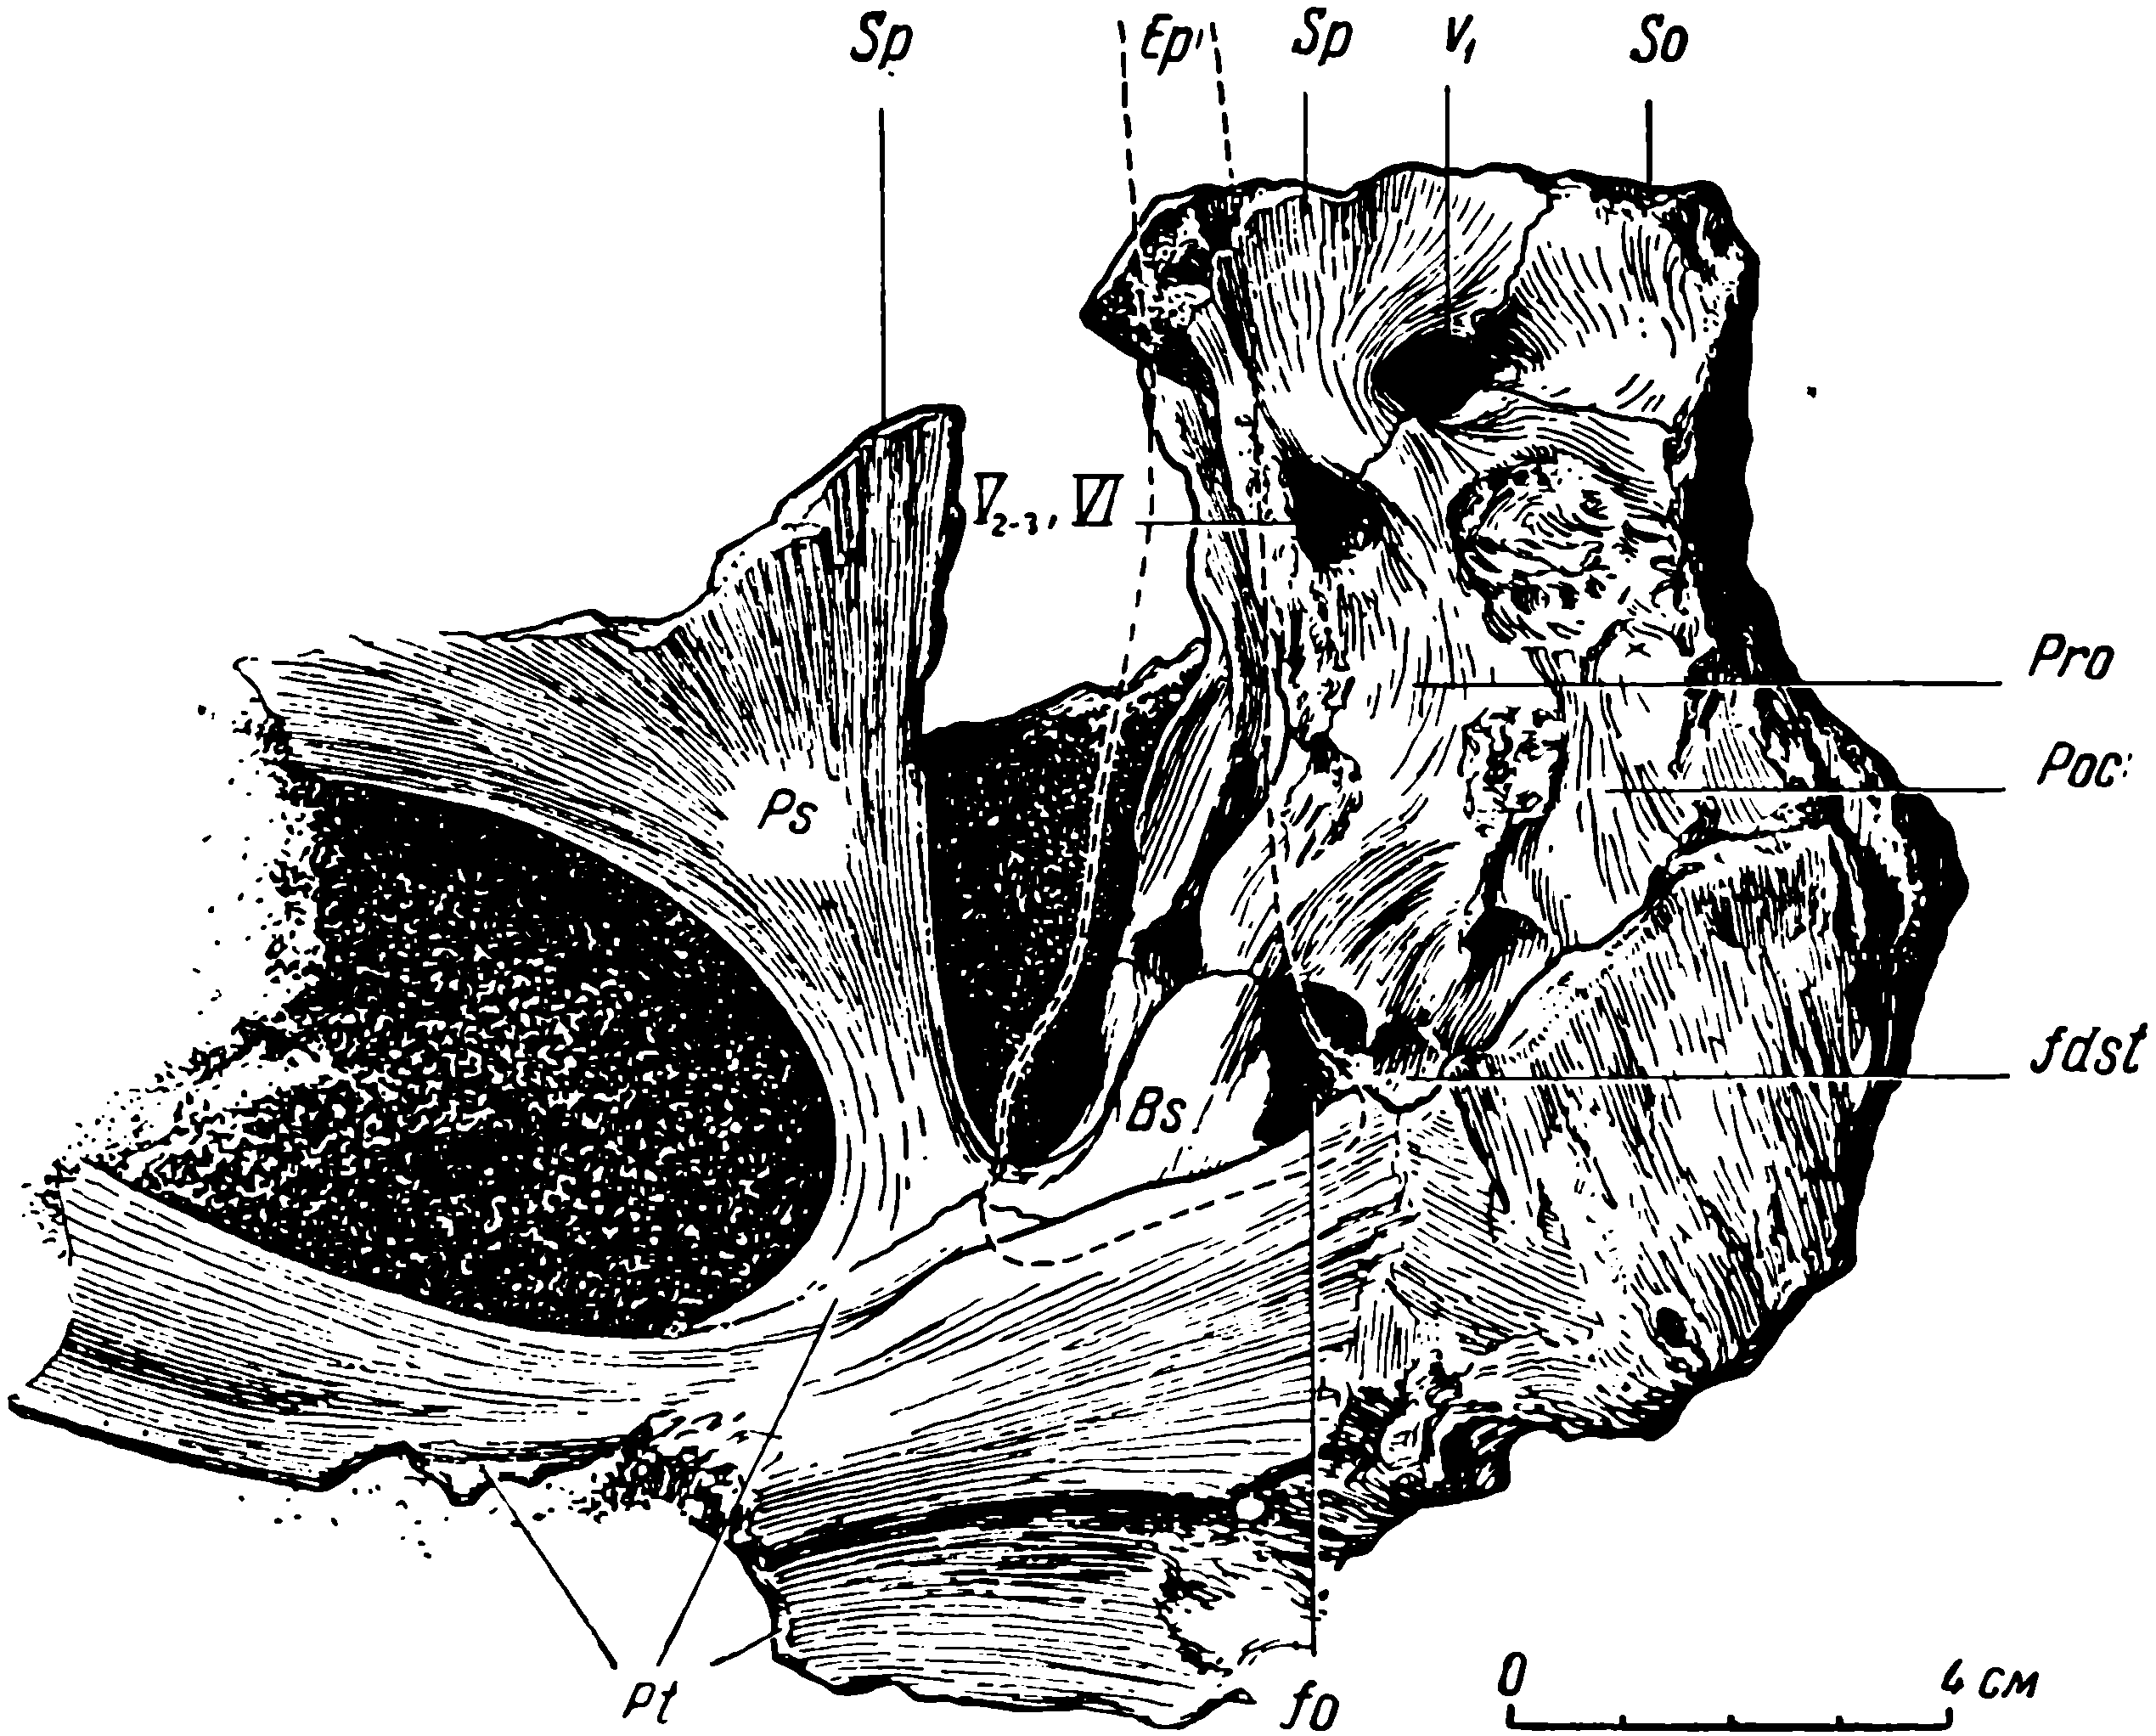 Рис. 10. Deuterosaurus biarmicus Eichw. Мозговая коробка черепа ЛГМ/ЧМП № 1, сбоку, с левой стороны. Пунктиром показаны контуры отломанного эпиптеригоида. Обозначения см. рис. 6, 9; кроме того: Ер — epipterygoideum; fdst — ямка для дорсального отростка stapes; fo — fenestra ovalis; Ps — parasphenoideum; Sp — sphenetmoideum; Pro — prooticum. Черным заштрихованы заполненные породой и потому неясные по строению полости мозгового черепа.